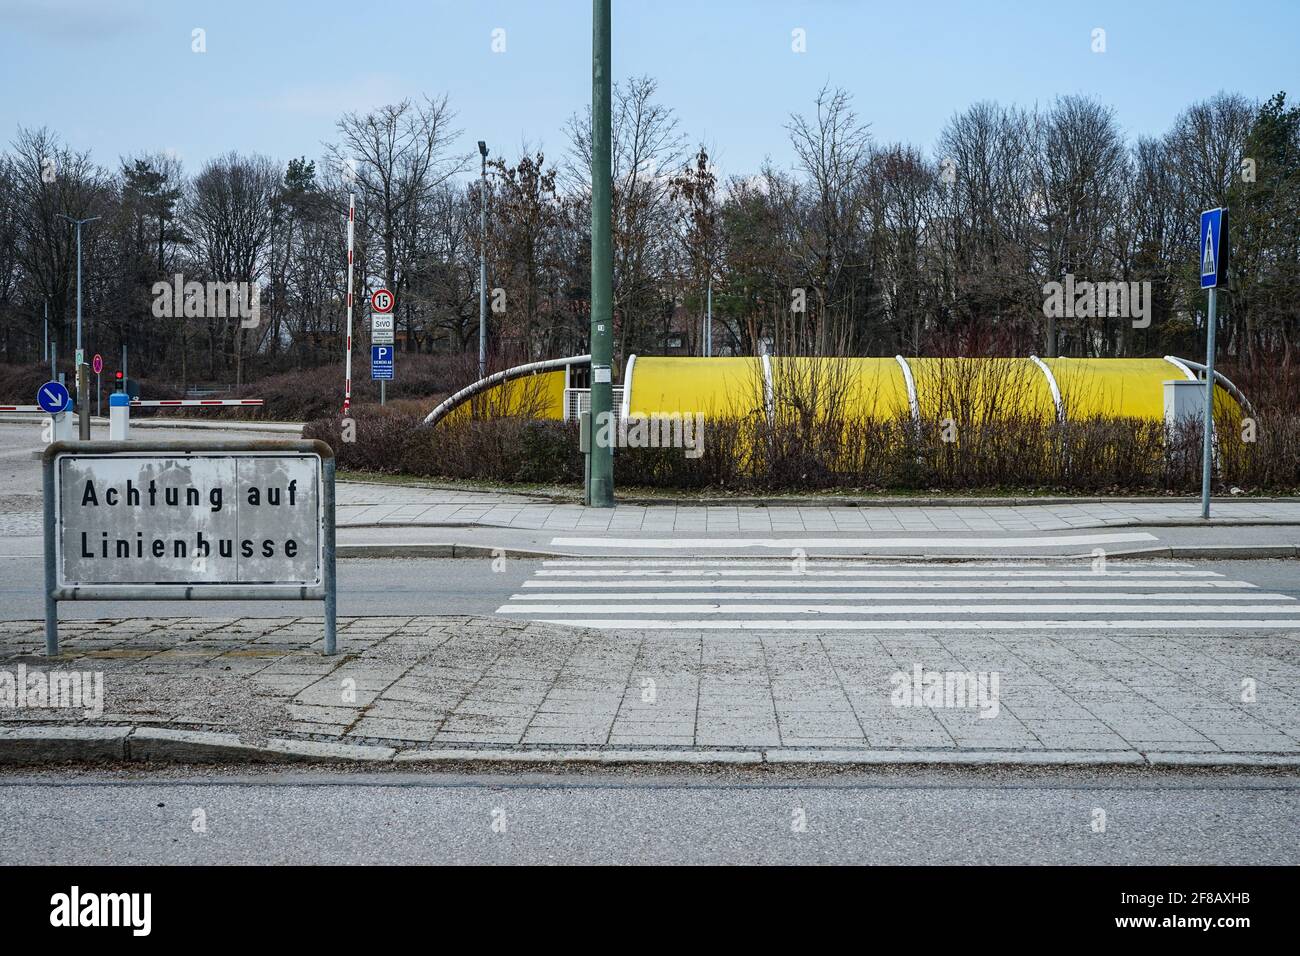 München, Neuperlach-Süd, Bayern, Deutschland, März 7, 2021: Siemens-Standort  München Perlach (Legoland genannt). Blick vom Otto-Hahn-Ring  Stockfotografie - Alamy